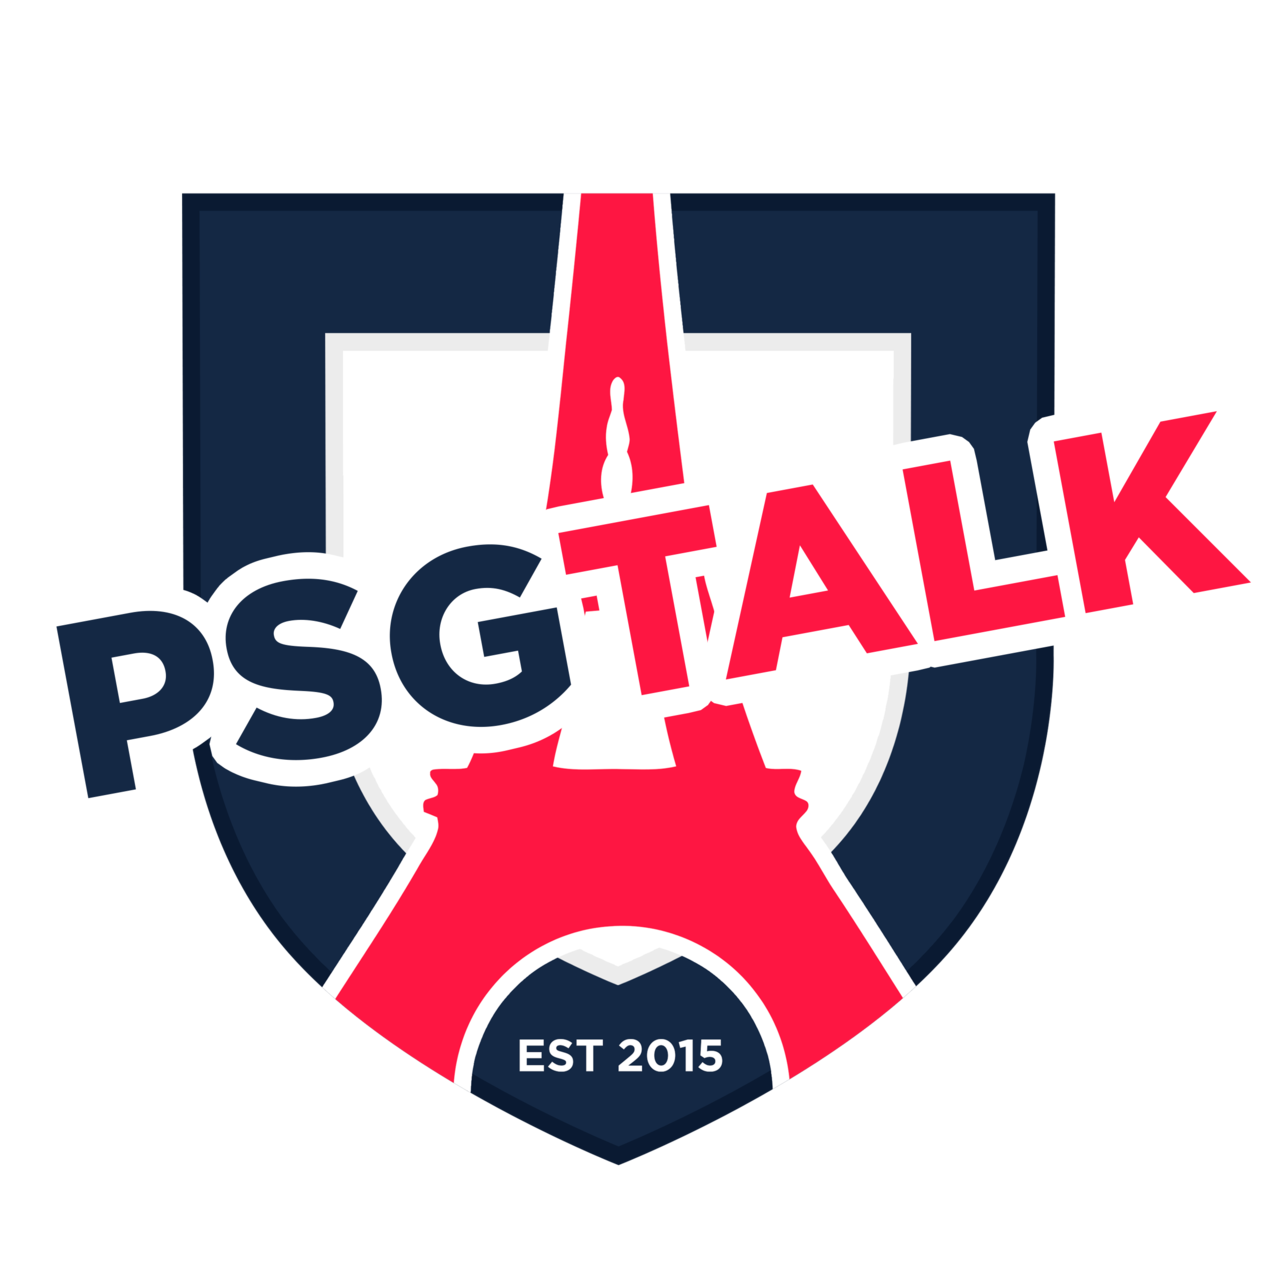 PSG Talk Extra Time